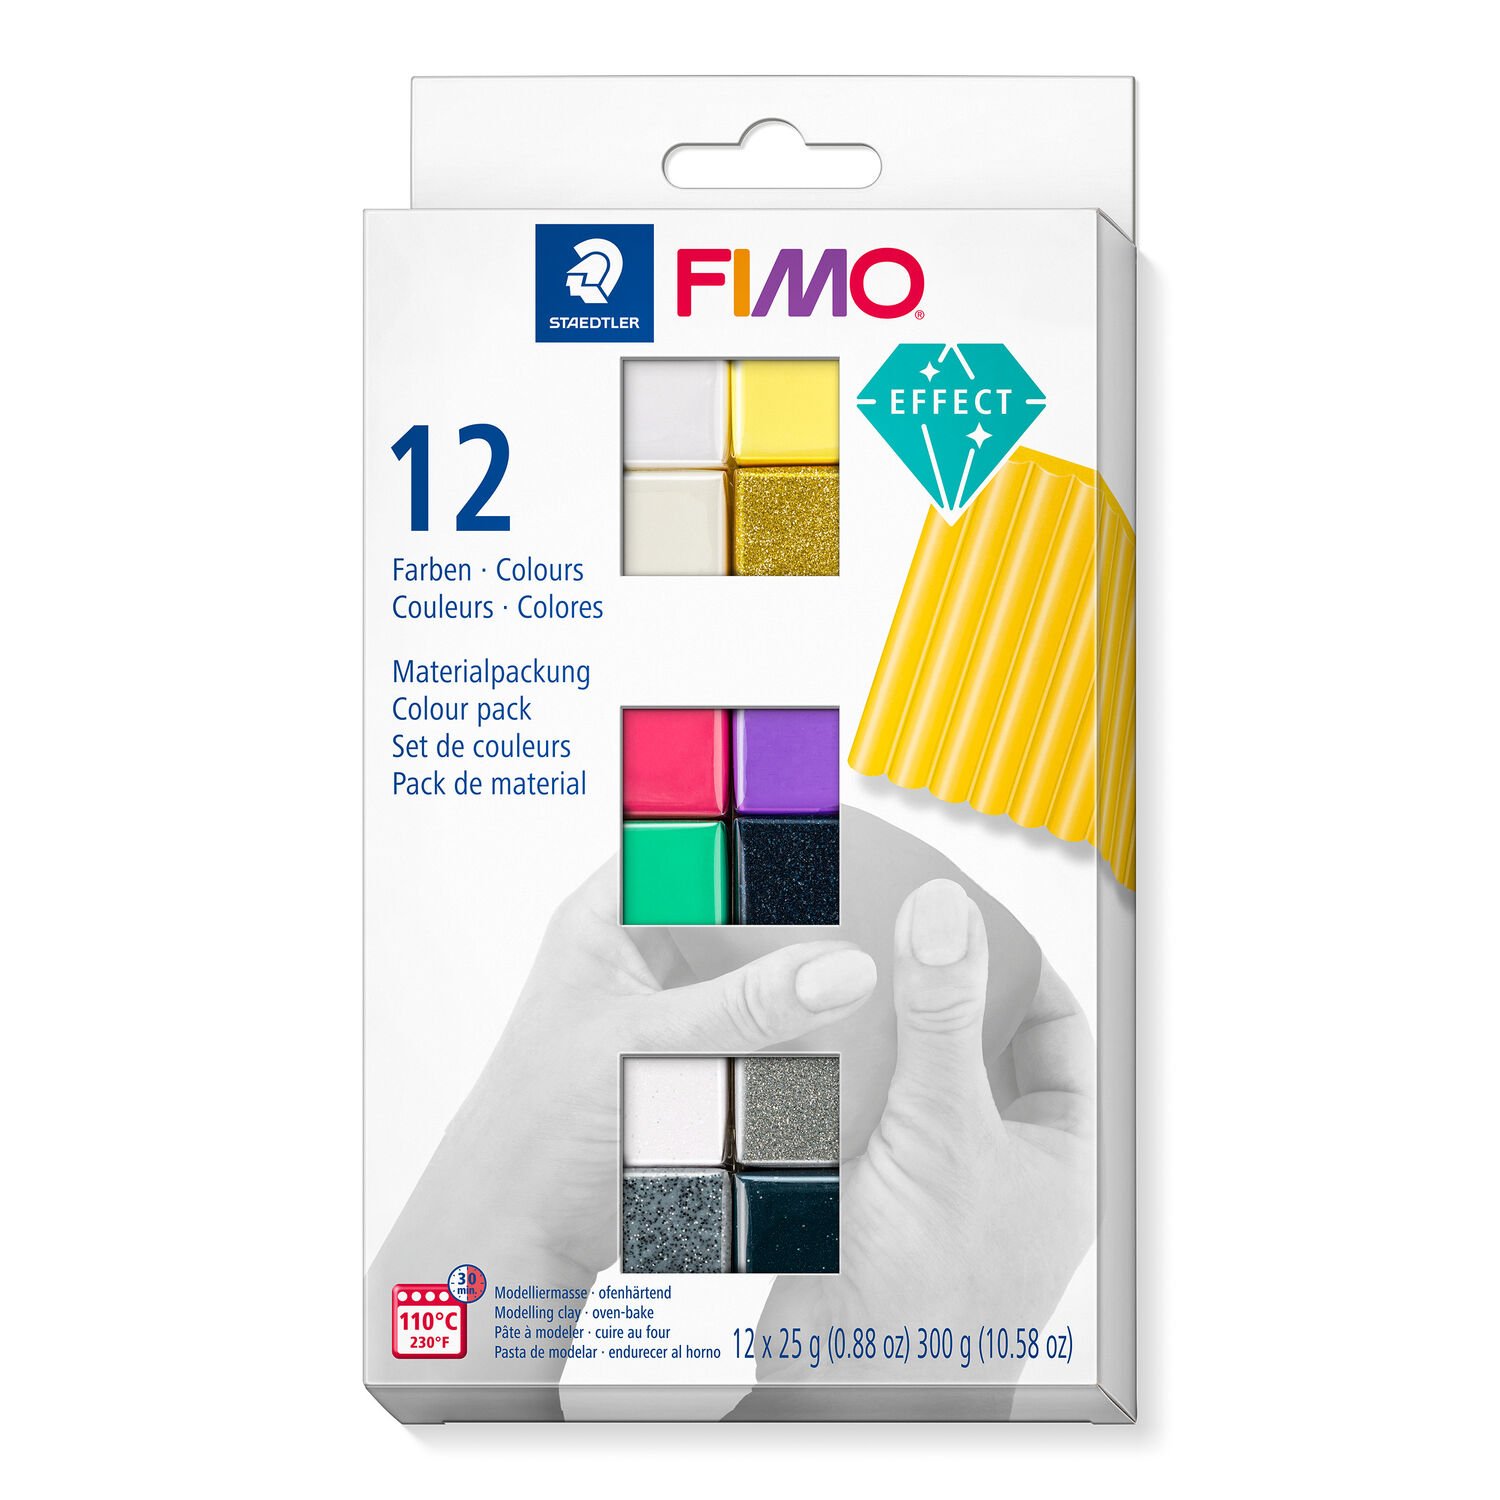 Materialpackung FIMO effect im Kartonetui mit 12 Halbblöcken (sortierte Farben), Gebrauchsanleitung